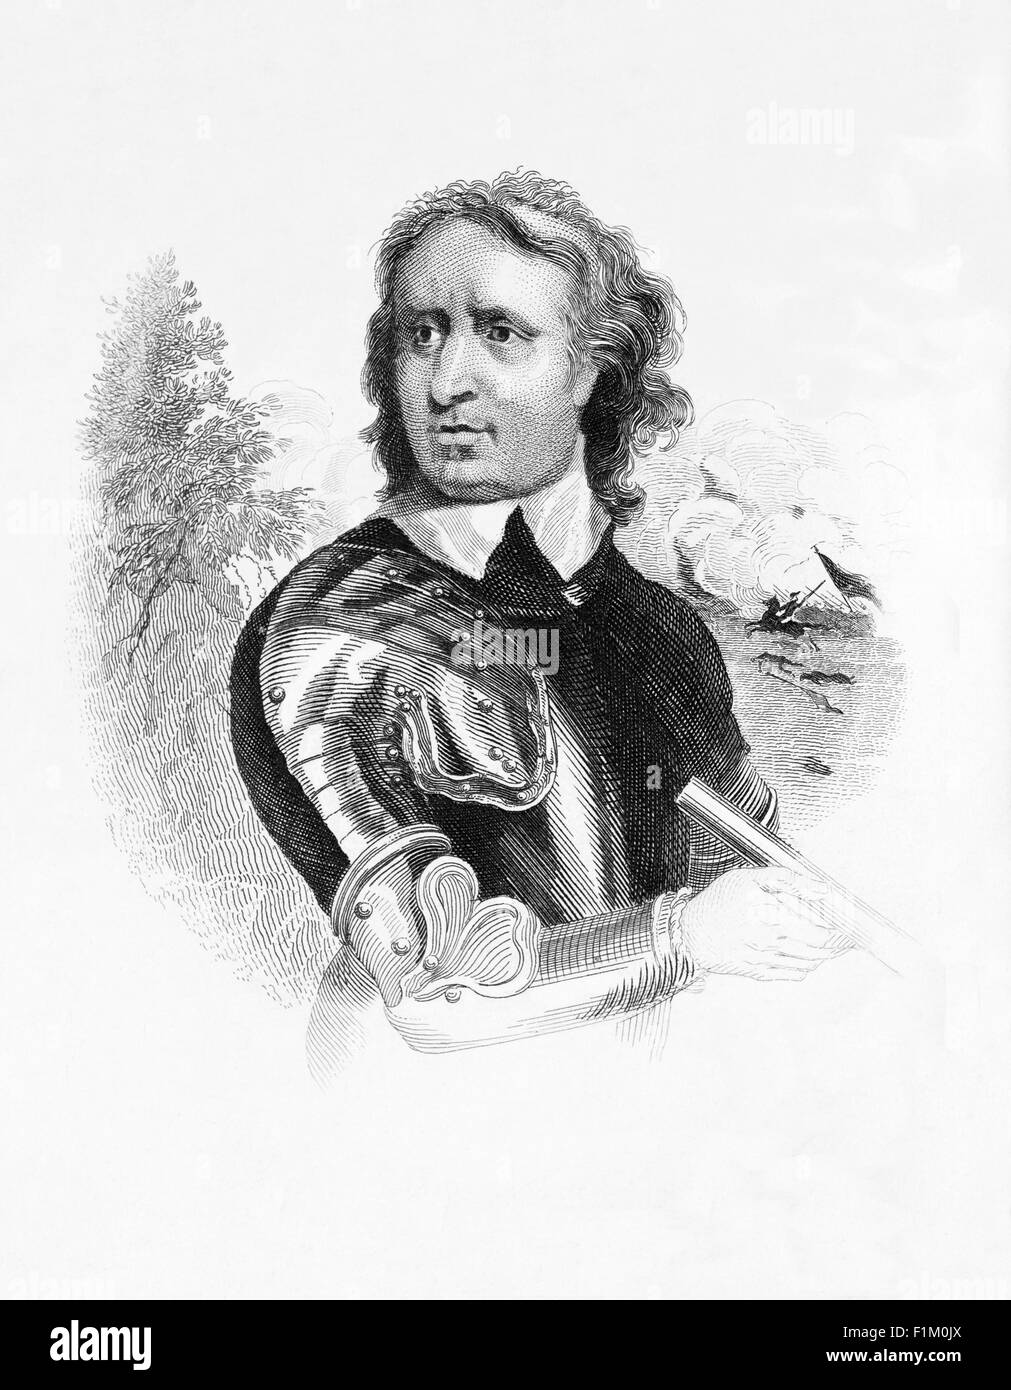 Oliver Cromwell (1599 - 1658), militaire et dirigeant politique qui faisait partie de la rébellion et Guerre Civile Anglaise, qui ont renversé la monarchie Stuart. Il a par la suite été invité à assumer un rôle de chef de l'état en 1653, comme seigneur de '' . Banque D'Images